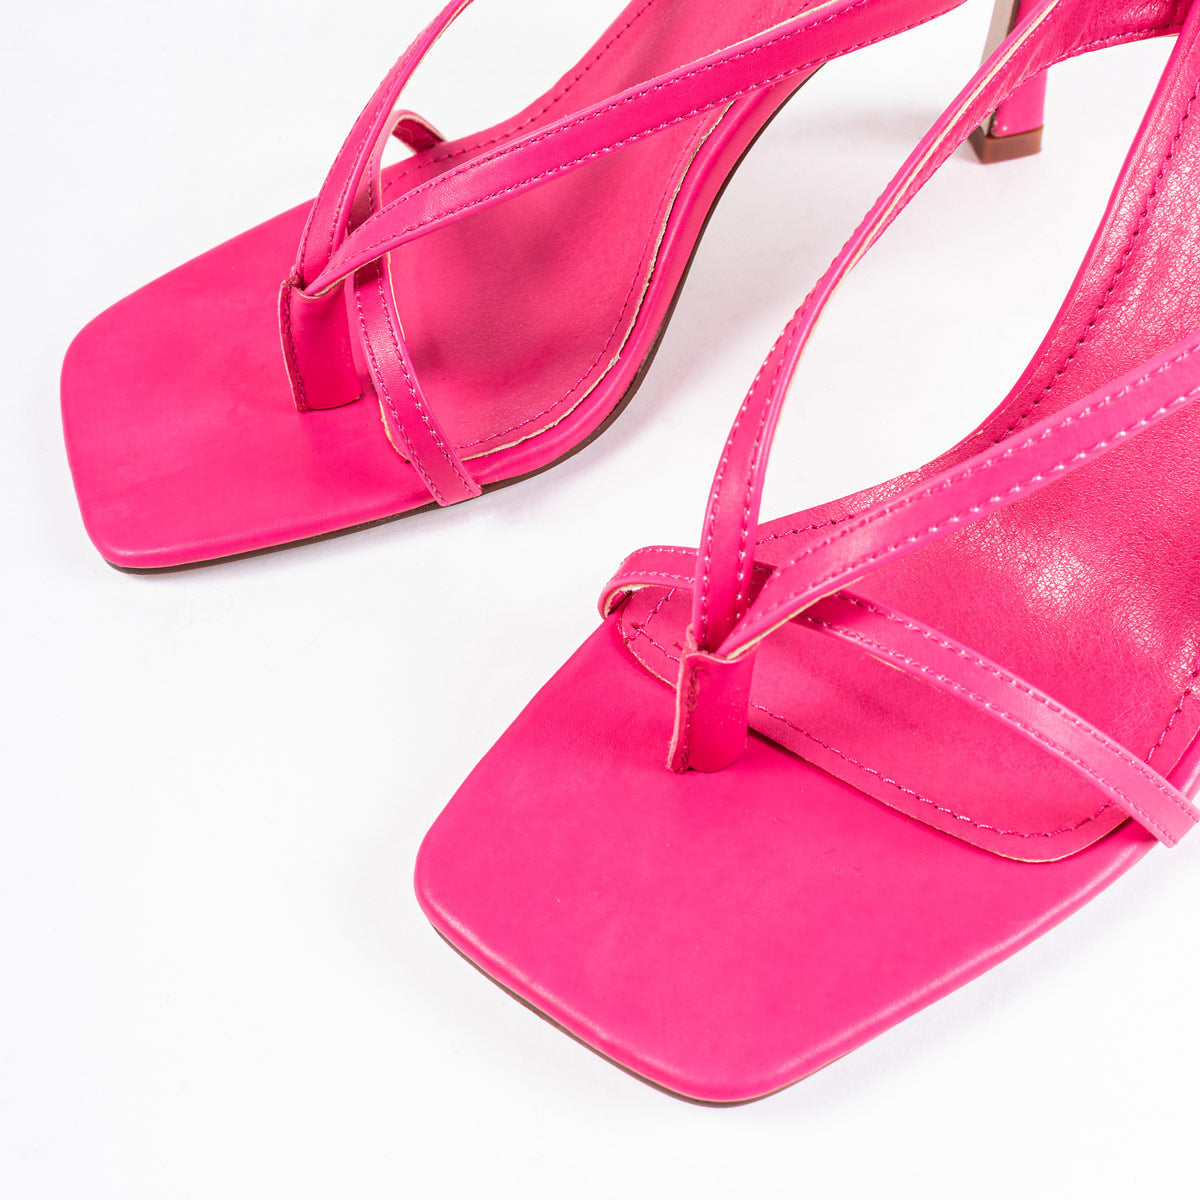 RAID Meeka Square Toe Post Sandal in Pink